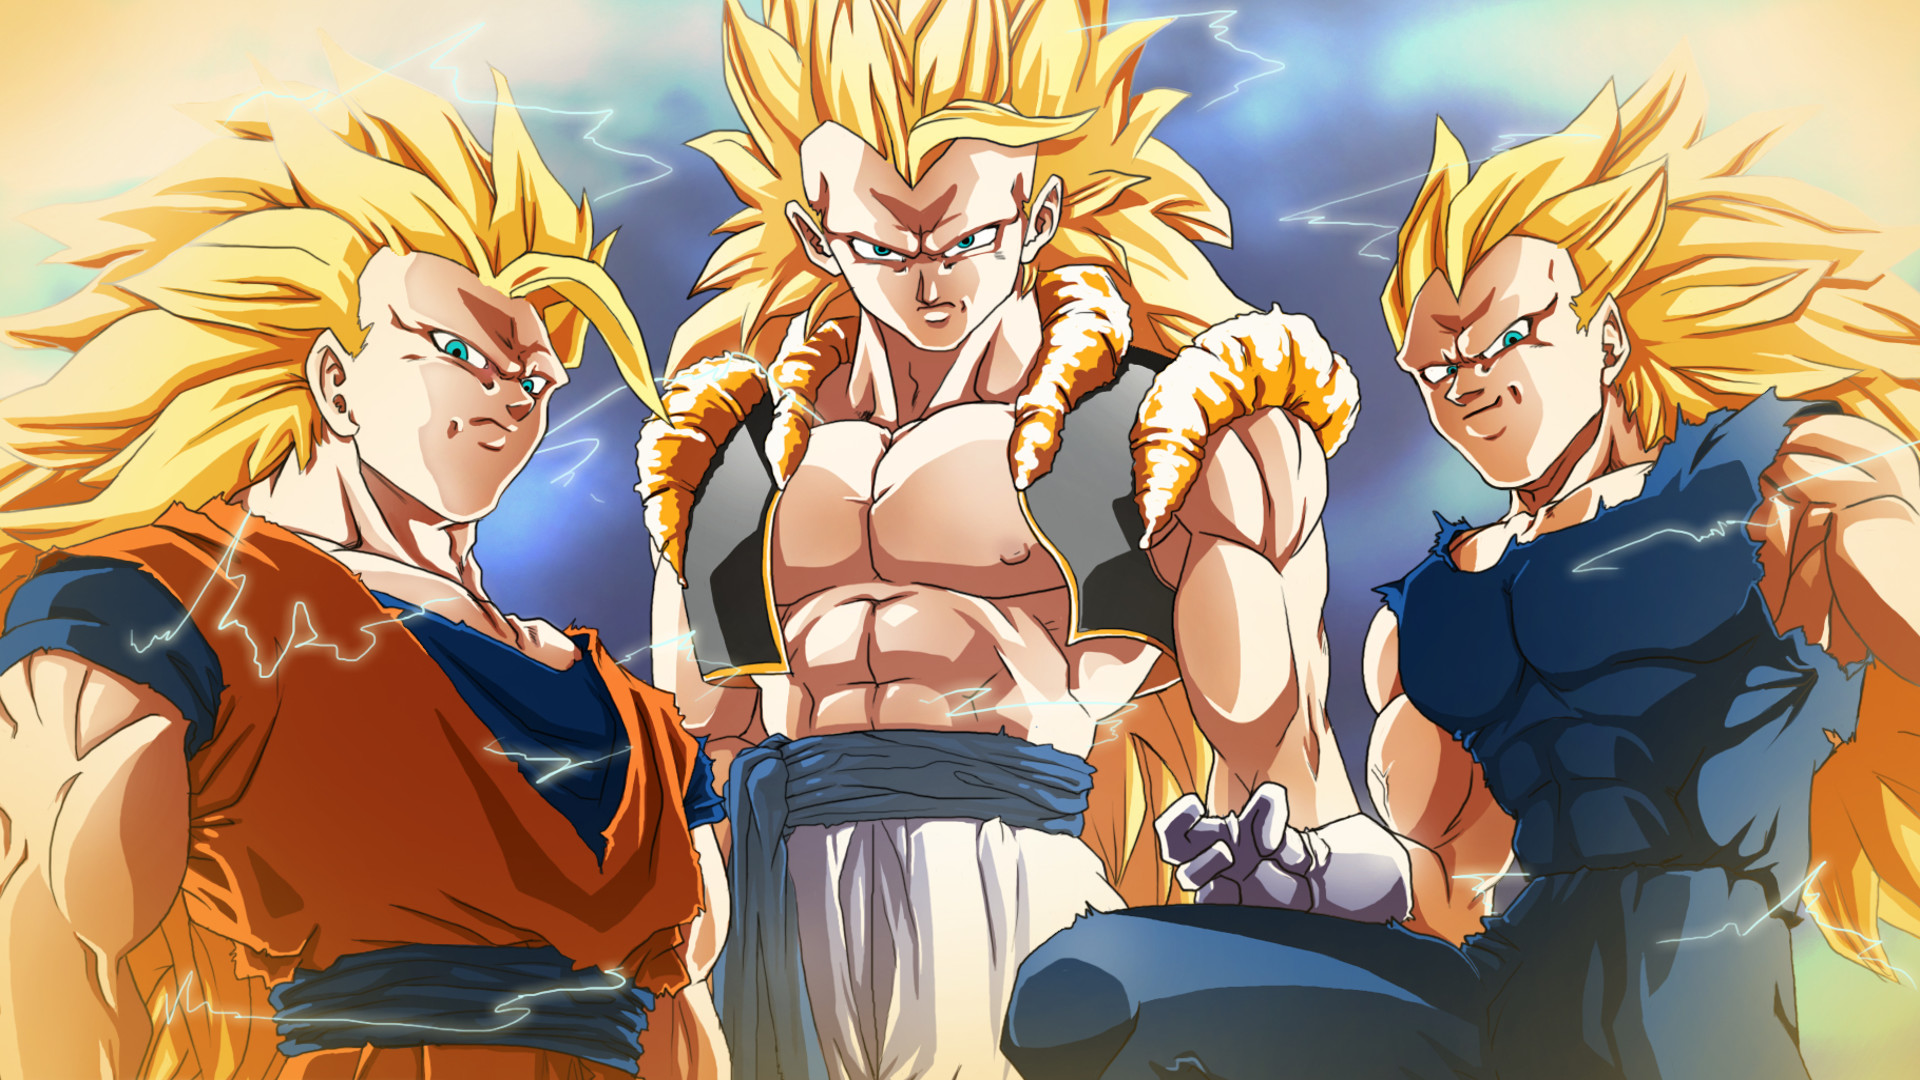 1920x1080 Erkunde Goku Und Vegeta, Super Saiyan Goku und noch mehr! Dragon Ball Z HD Wallpapers  Backgrounds Wallpaper